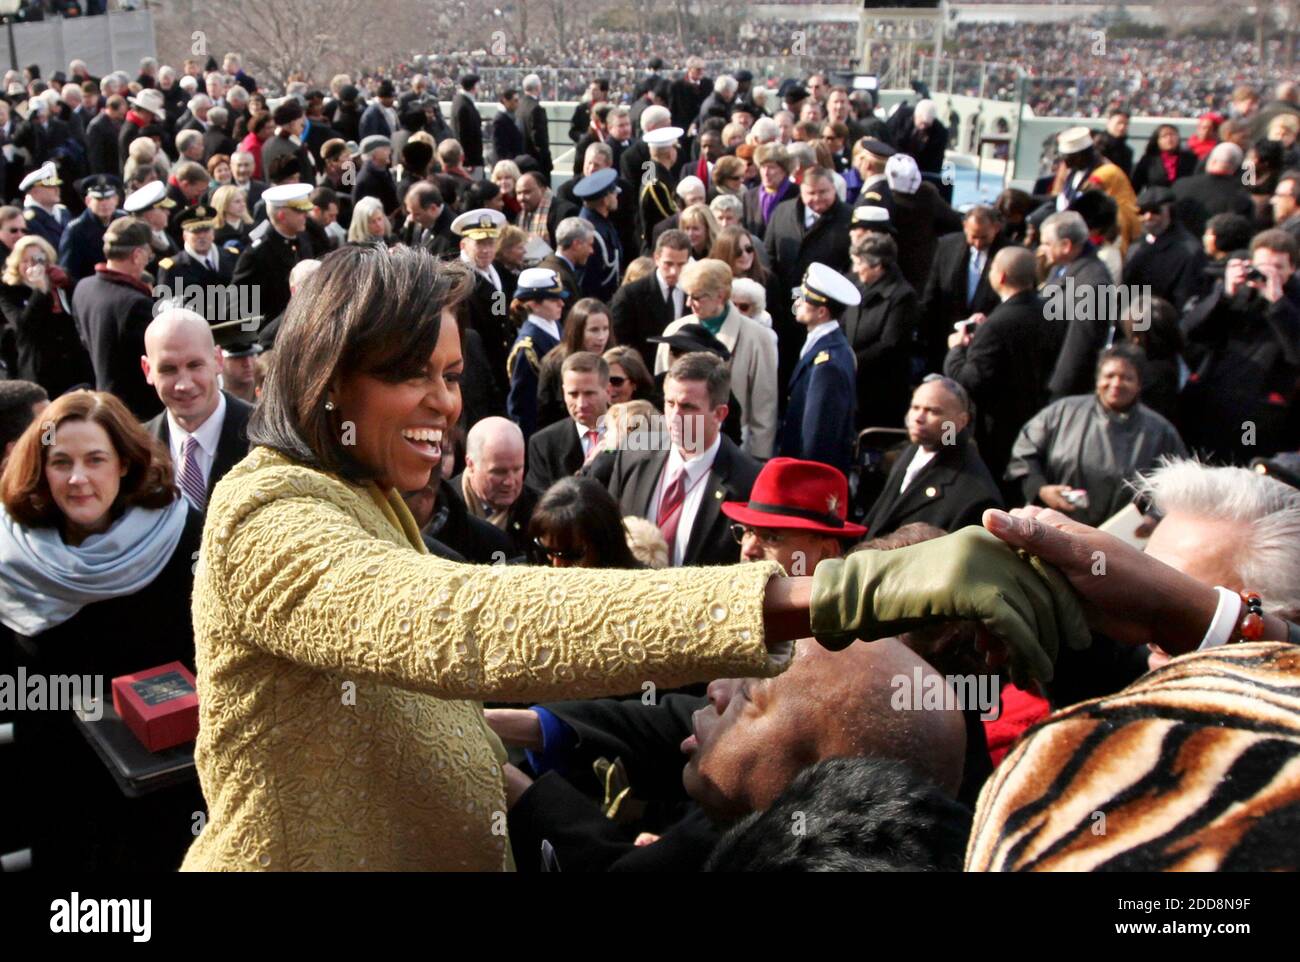 PAS DE FILM, PAS DE VIDÉO, PAS de TV, PAS DE DOCUMENTAIRE - la première dame Michelle Obama s'adresse aux invités après que son mari, le président Barack Obama, a été assermenté en tant que 44e président américain au Capitole des États-Unis à Washington, D.C., Etats-Unis le 20 janvier 2009. Obama devient le premier afro-américain à être élu président dans l'histoire des États-Unis. Photo Pool/MCT/ABACAPRESS.COM Banque D'Images